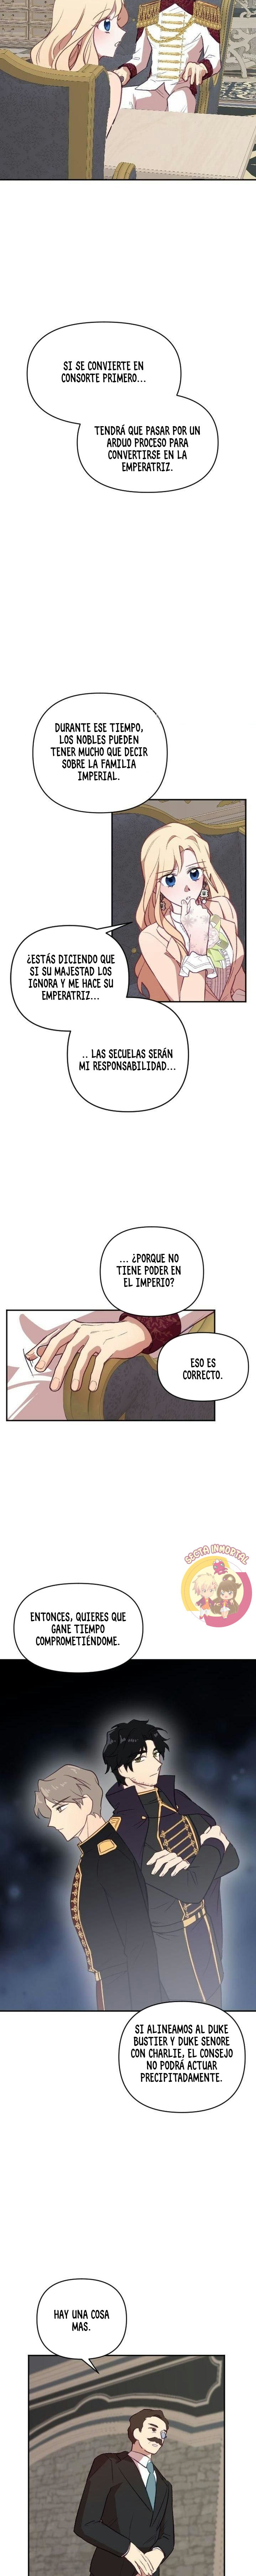 Manga Plantando un corazon al emperador Chapter 19 image number 13